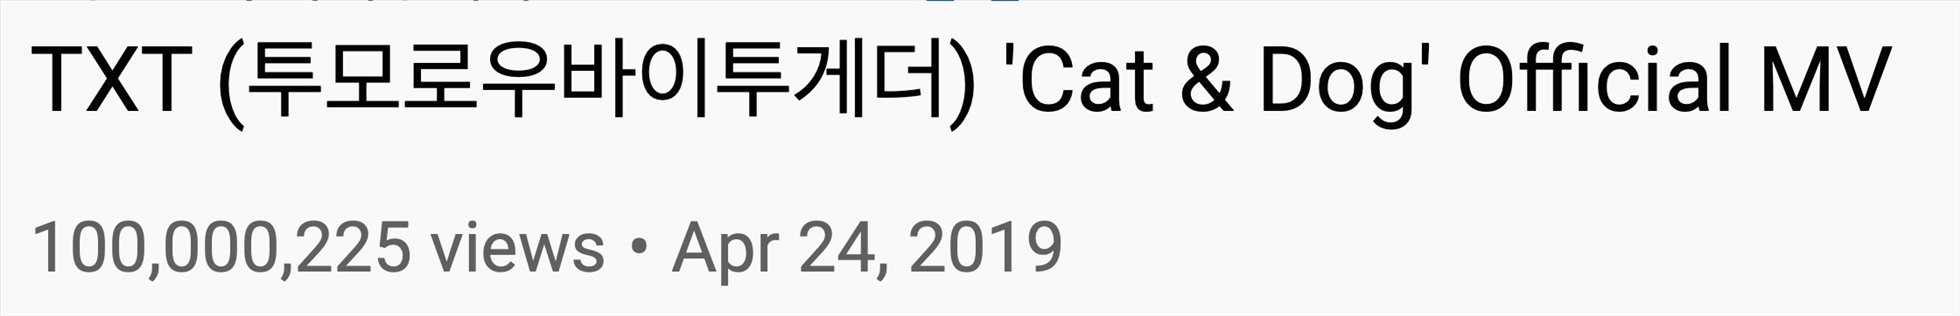 MV “Cat & Dog” của TXT chính thức cán mốc 100 triệu lượt xem. Ảnh: Soompi